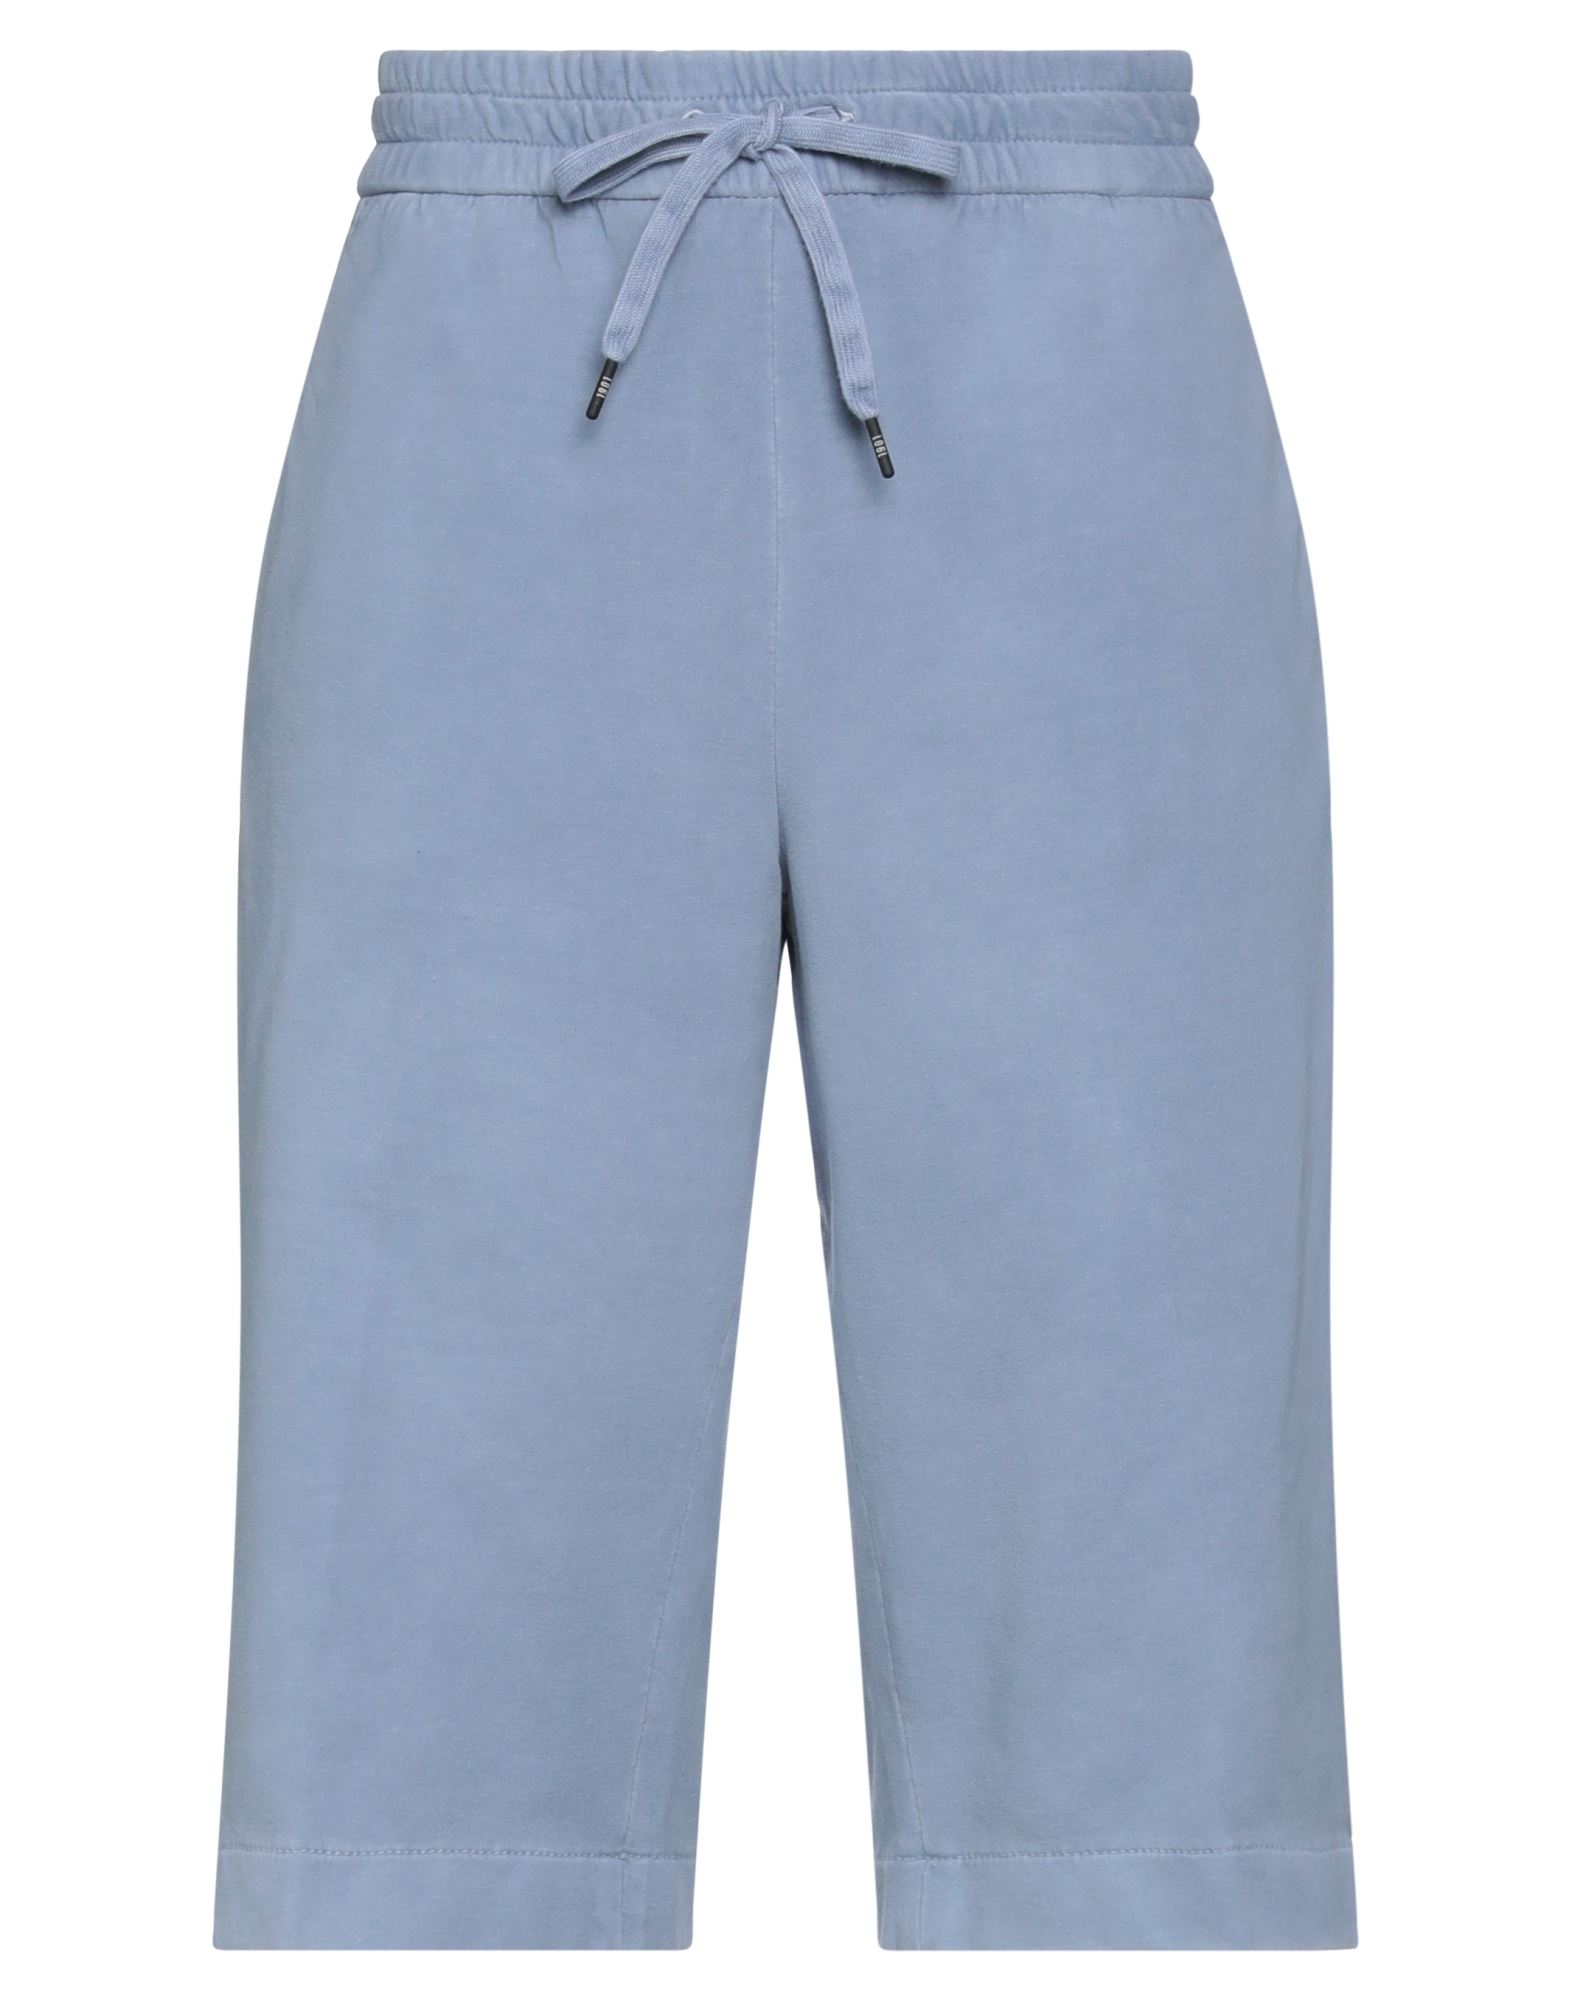 Circolo 1901 Woman Shorts & Bermuda Shorts Pastel Blue Size M Cotton, Elastane